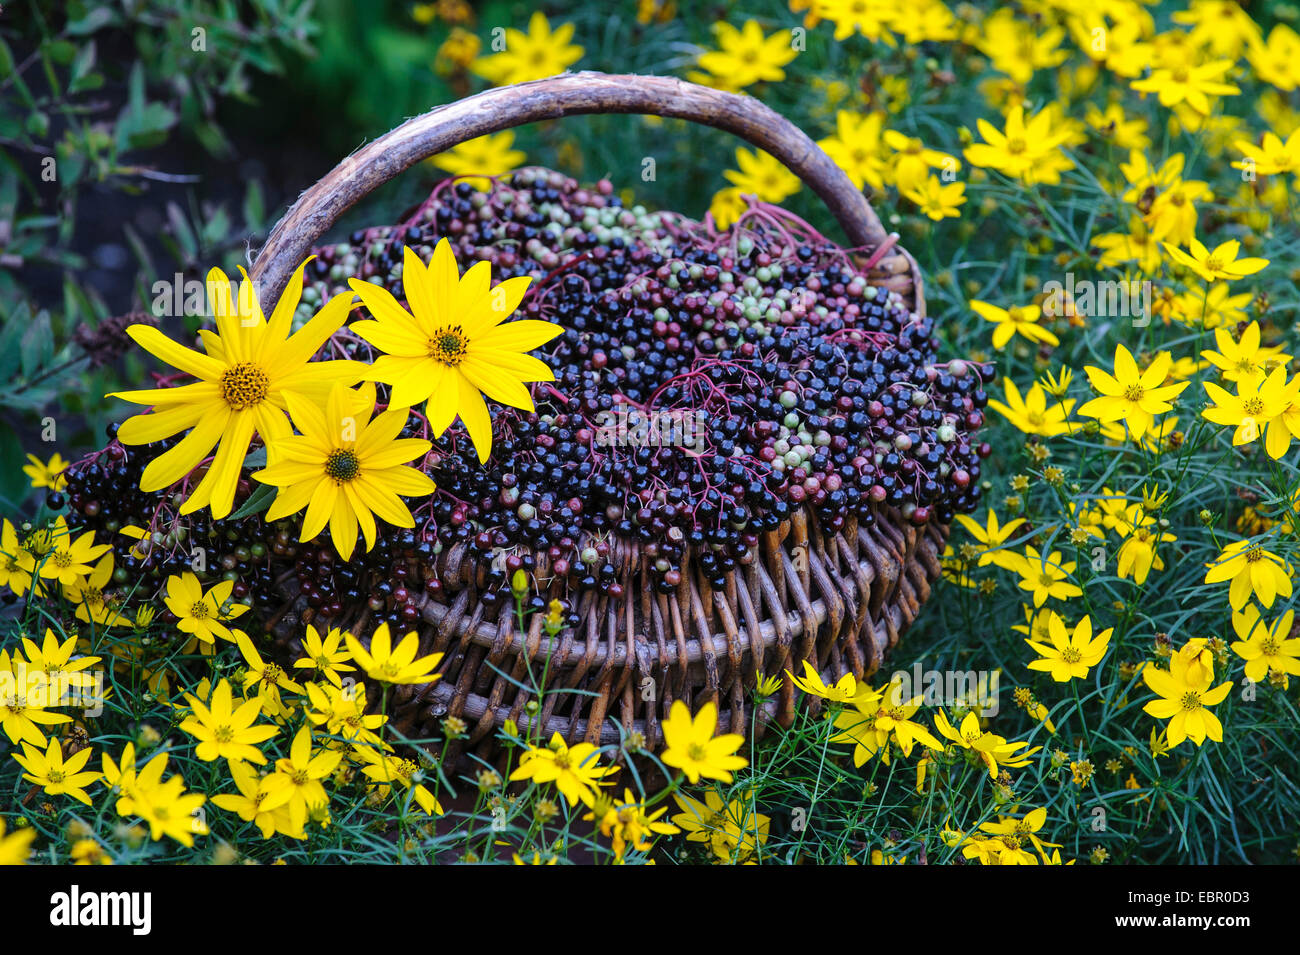 L'aîné, le Sureau noir européen commun, ancien (Sambucus nigra), recueilli les fruits mûrs avec un aîné Coreopsis fleurs, Allemagne, Basse-Saxe Banque D'Images